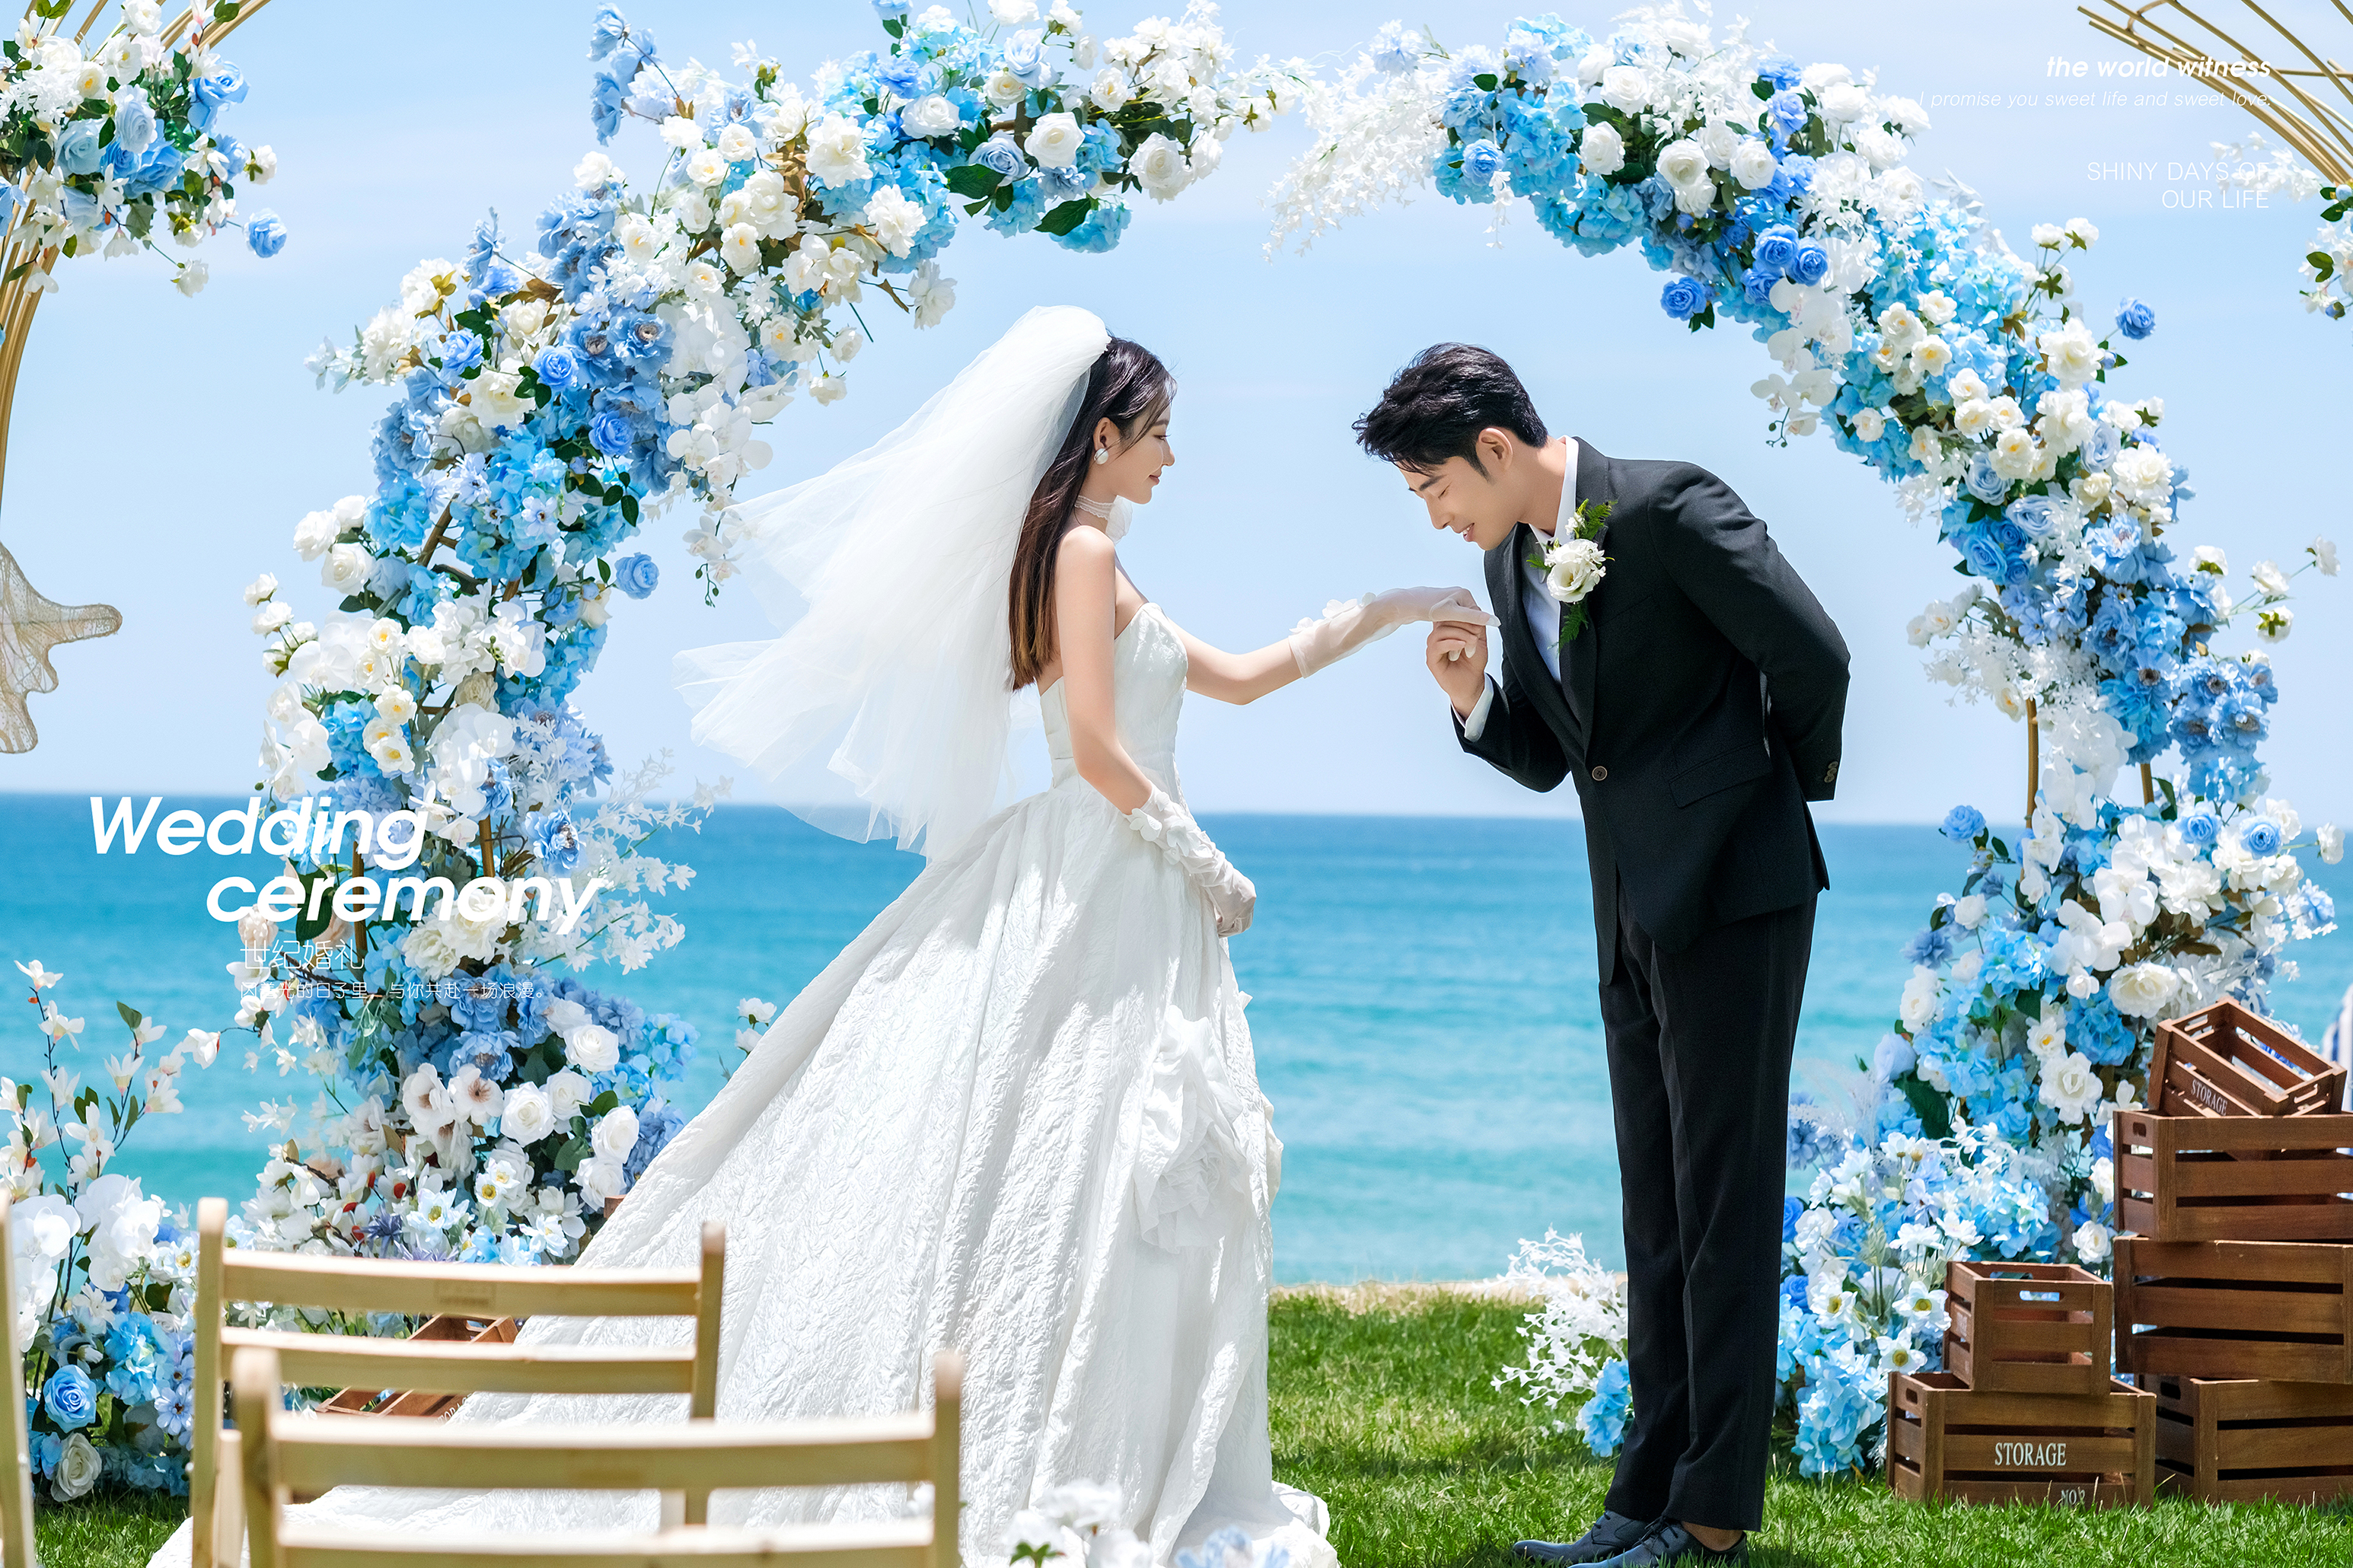 目的地婚礼-海岛草坪婚礼